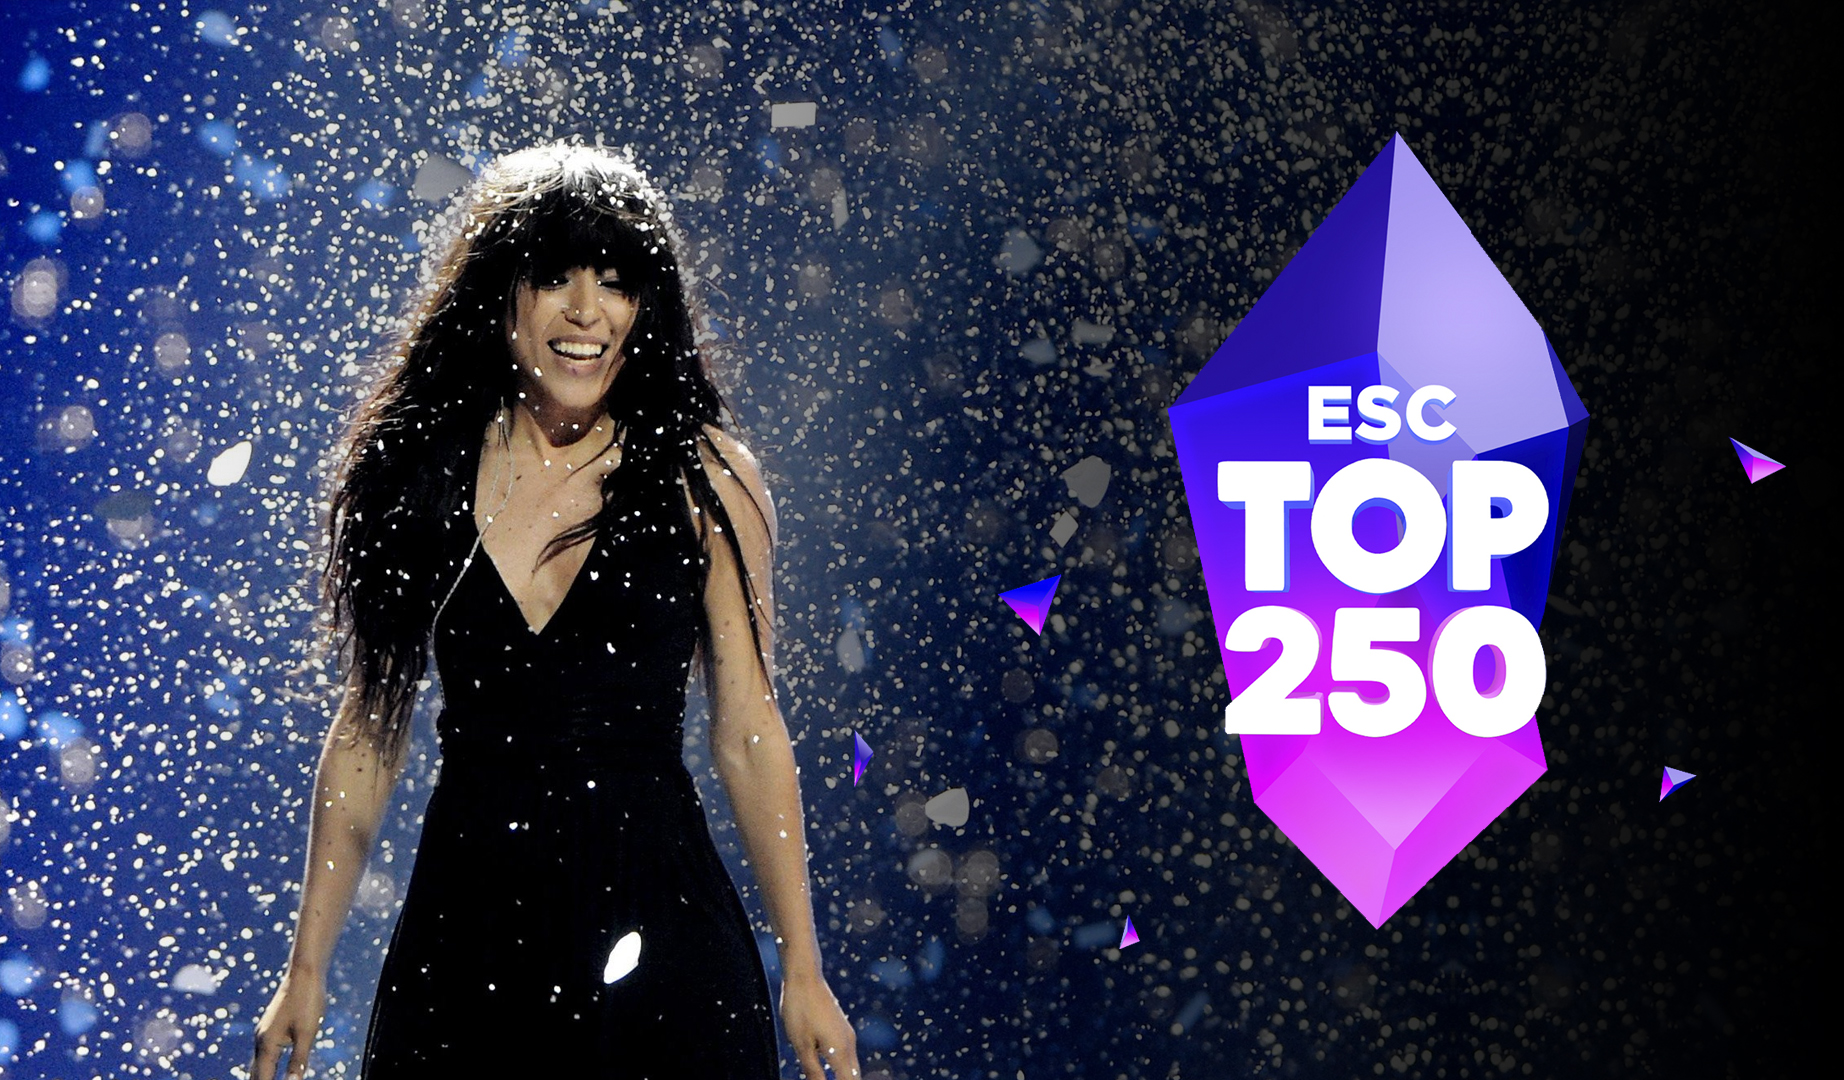 Loreen lidera de nuevo el top 250 de ESC Radio, Pastora Soler obtiene la novena posición.